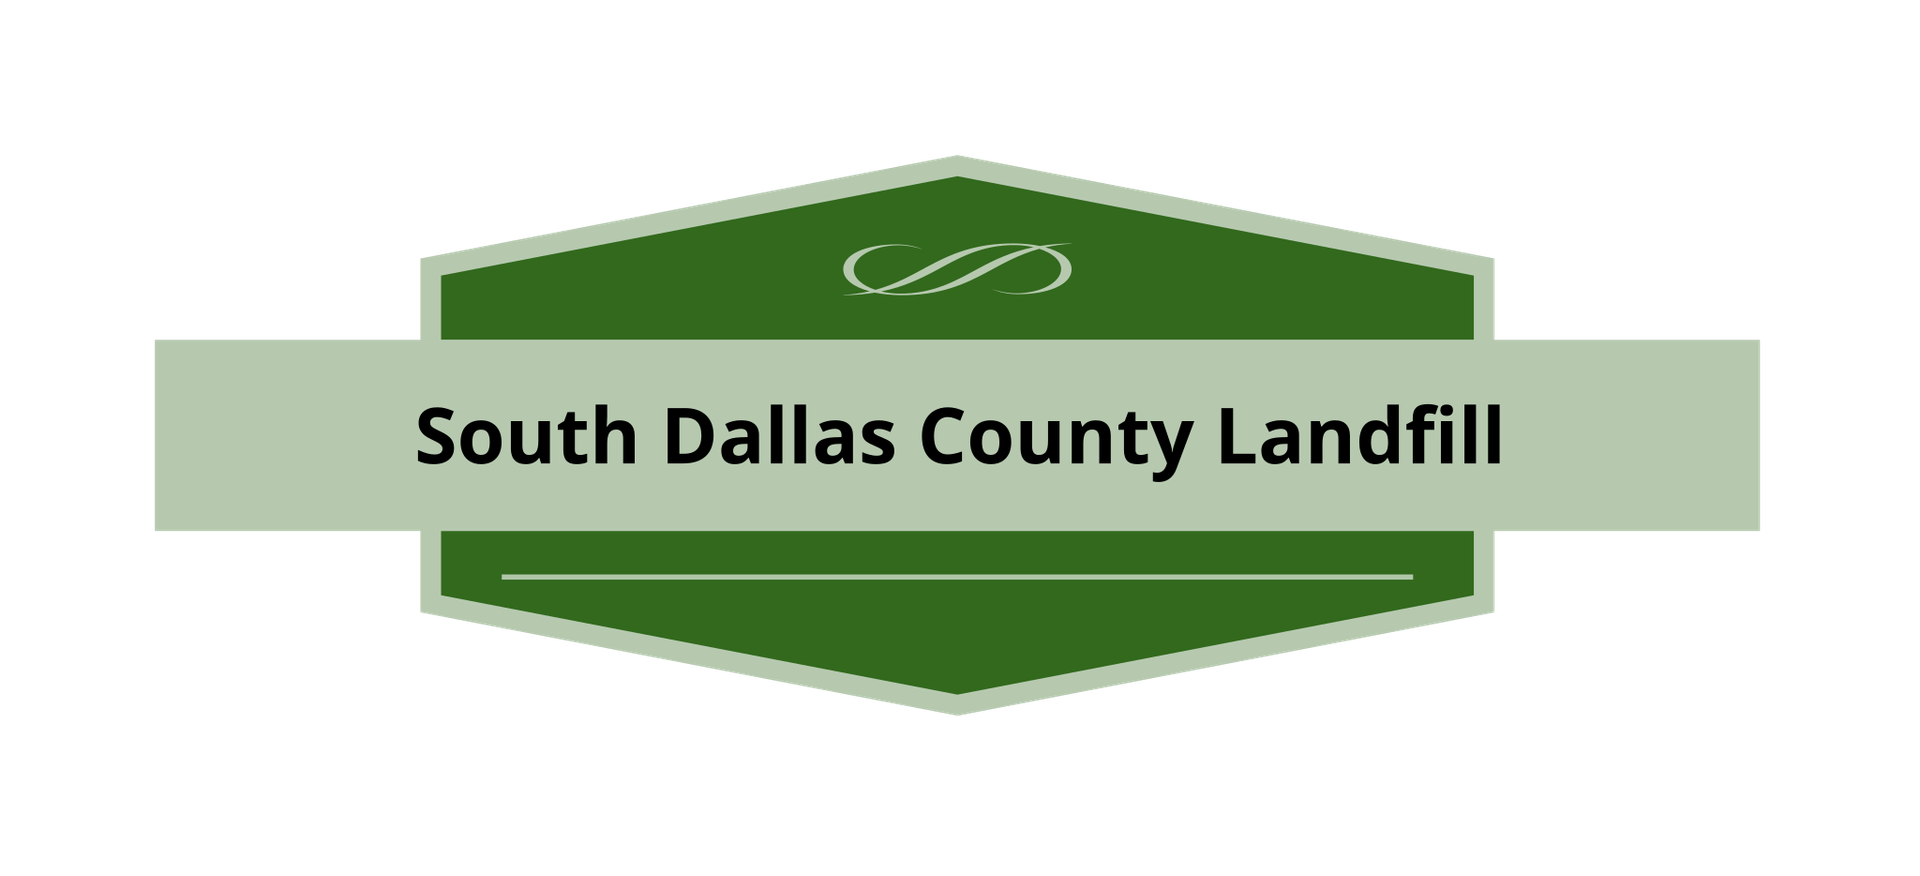 South Dallas County Landfill